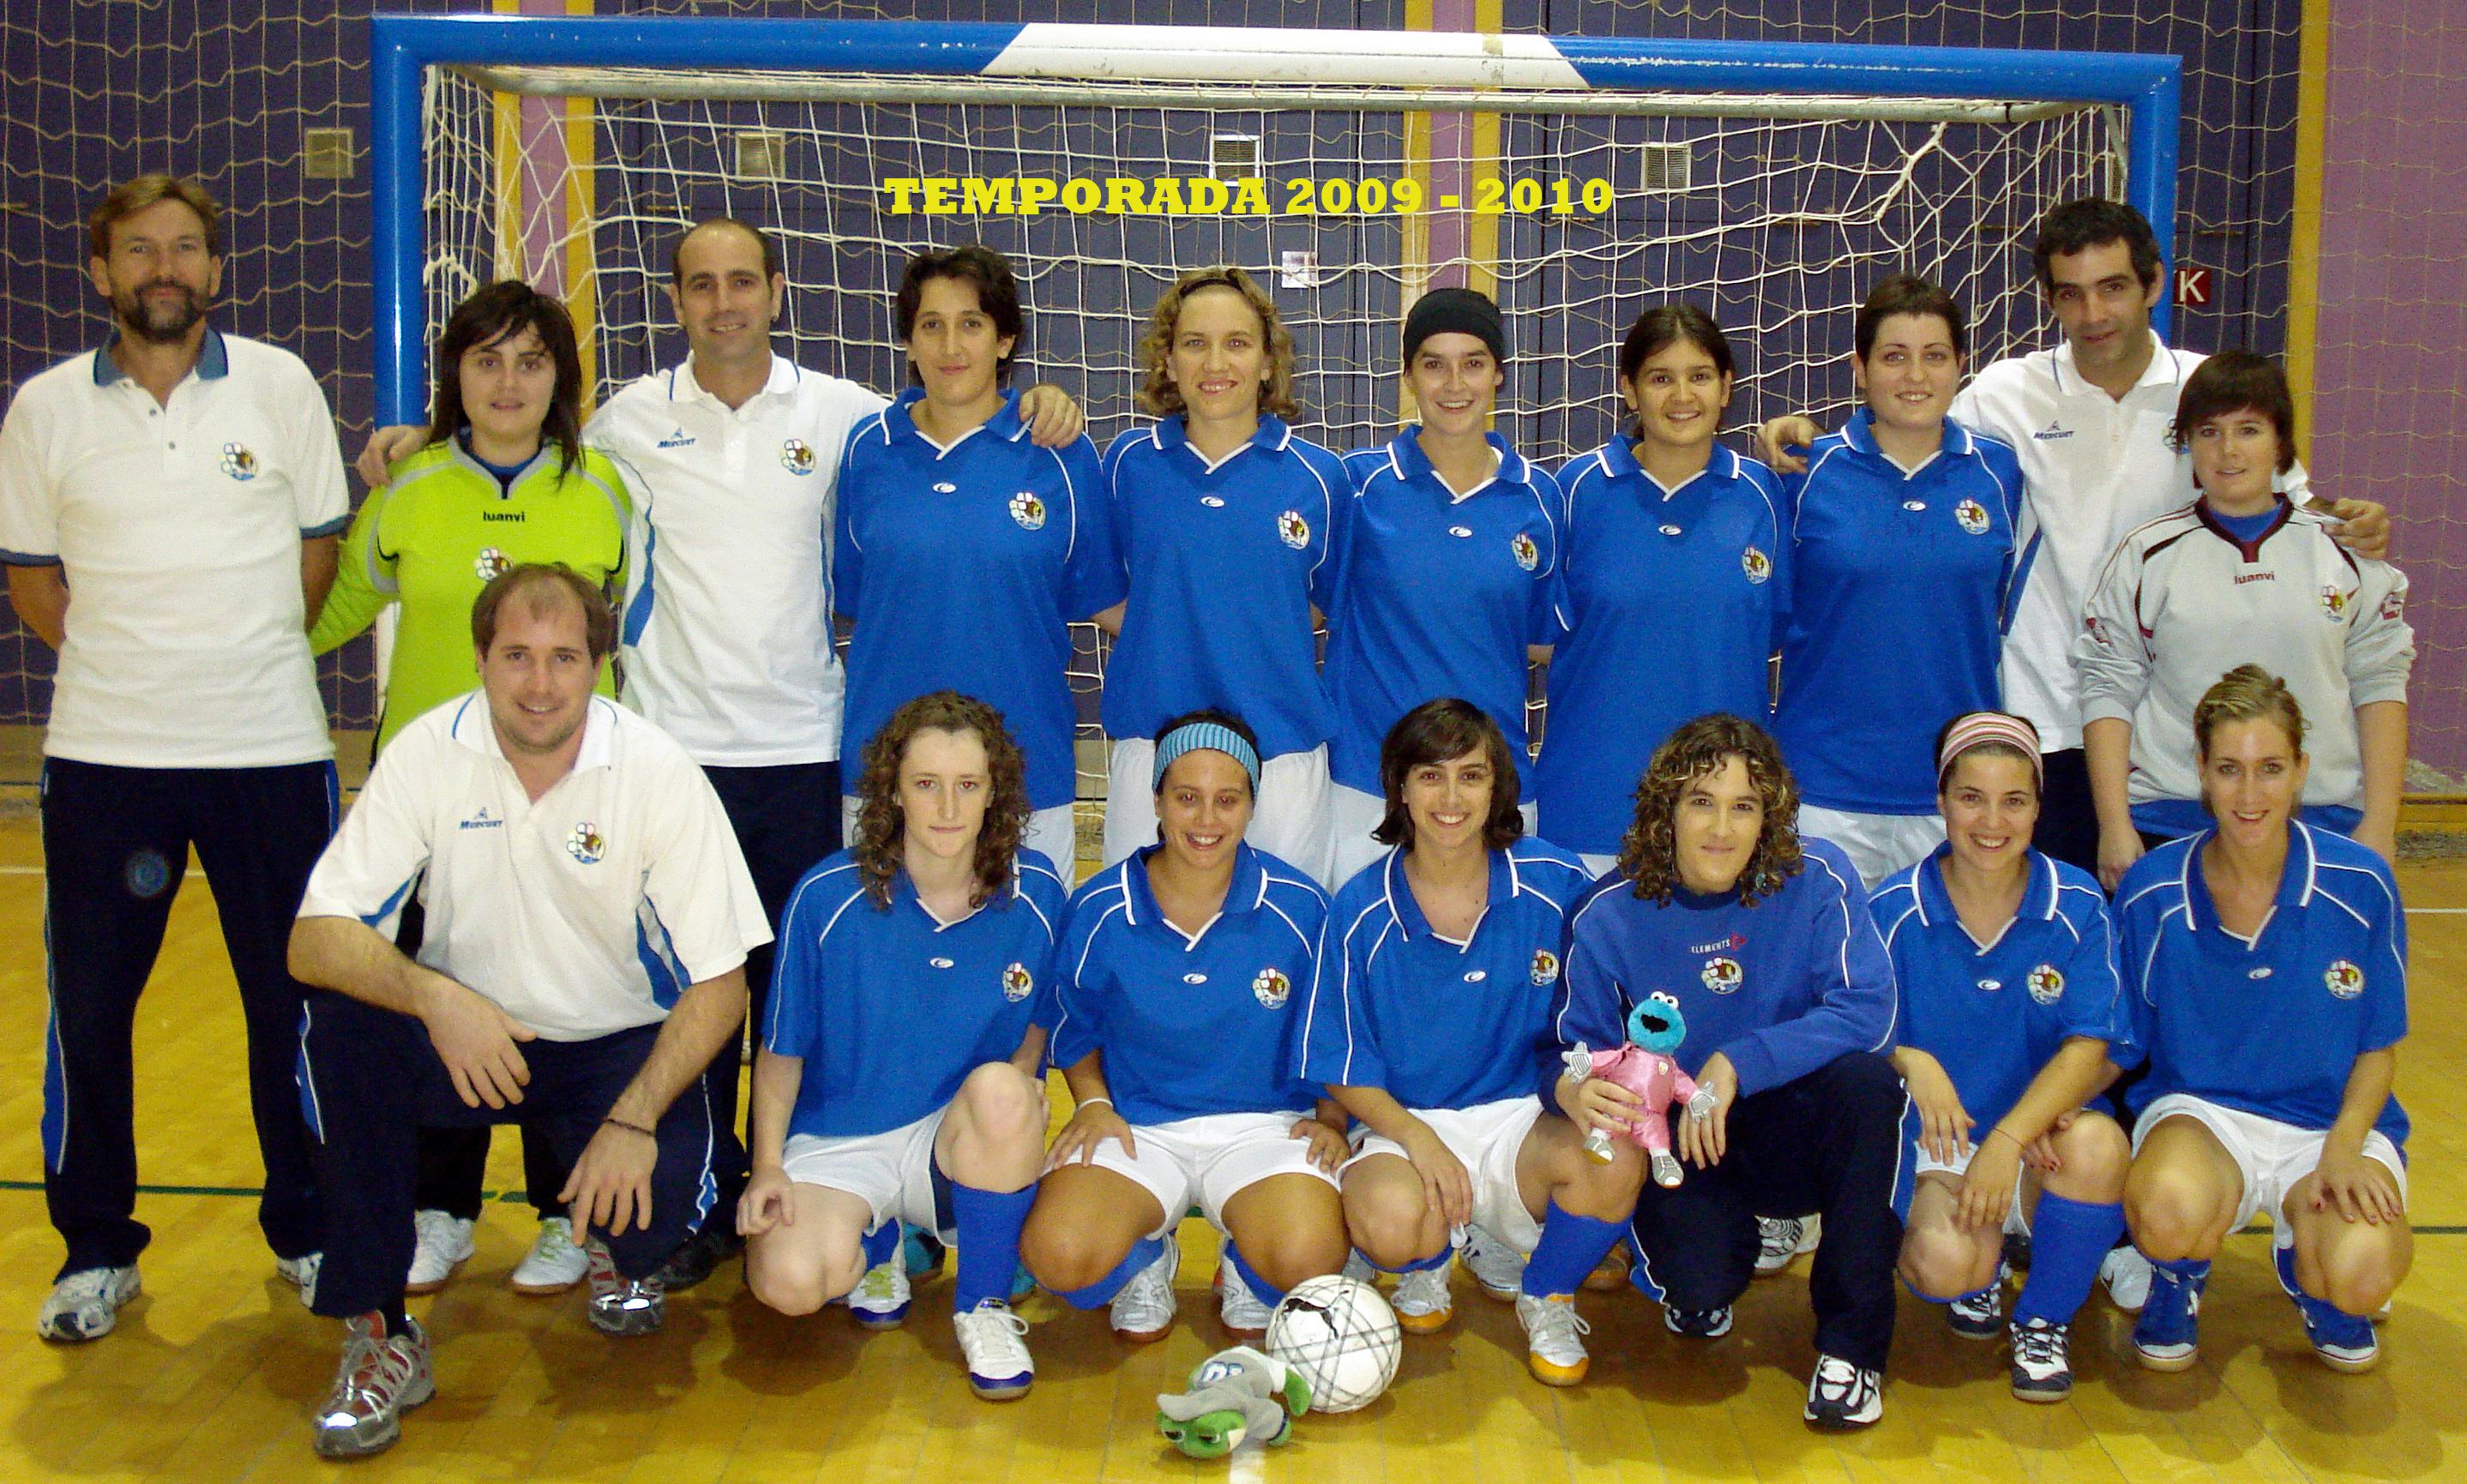 TEMPORADA 2009 - 2010